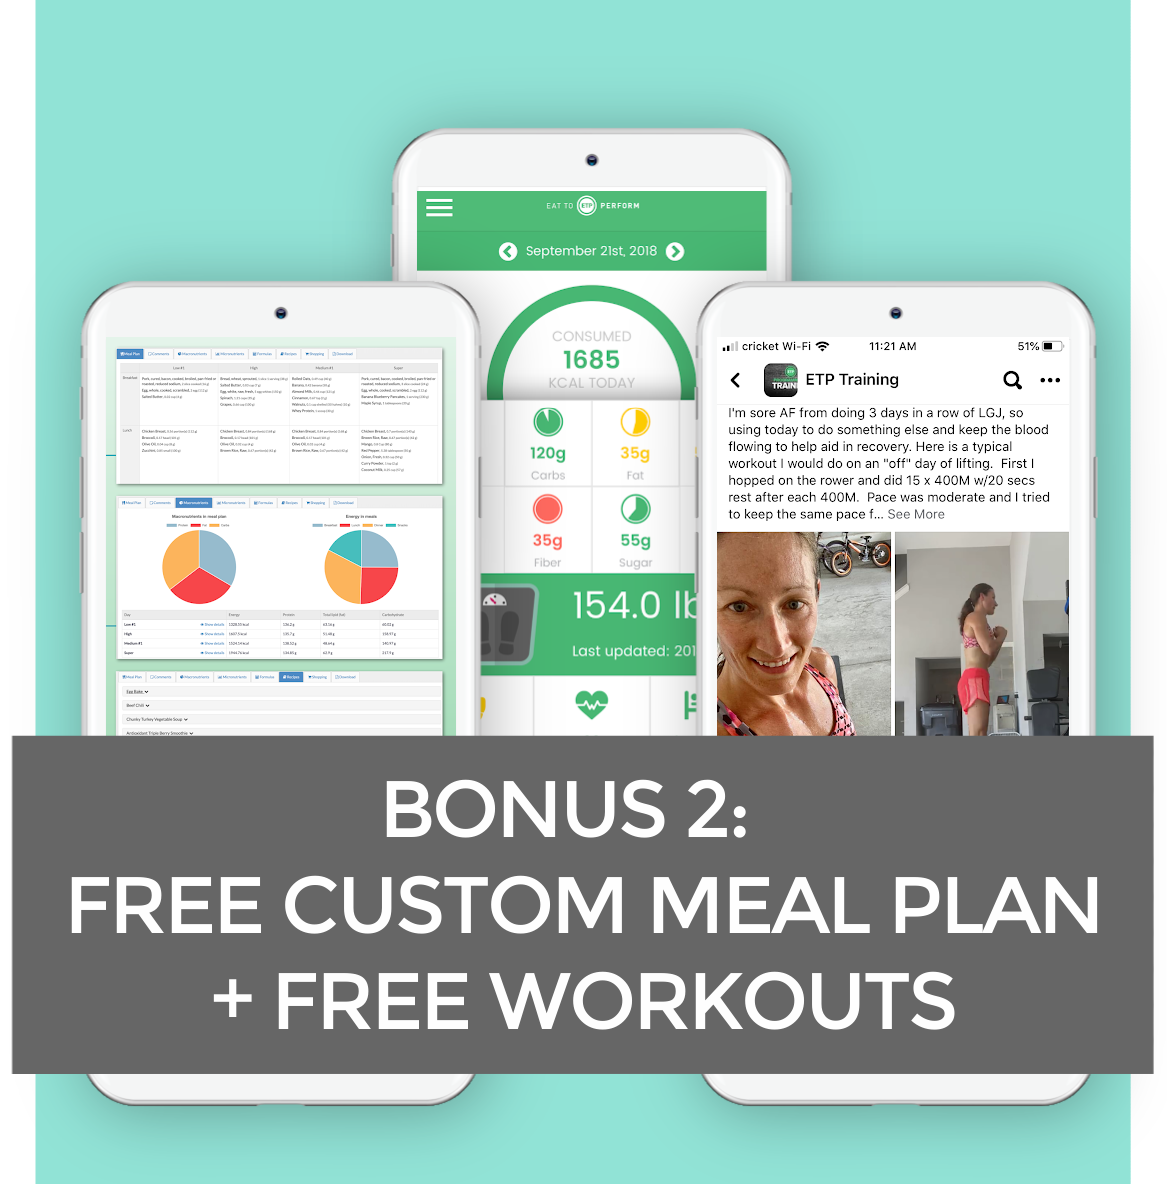 Bonus 2: Free Custom Meal Plan + Free Workouts